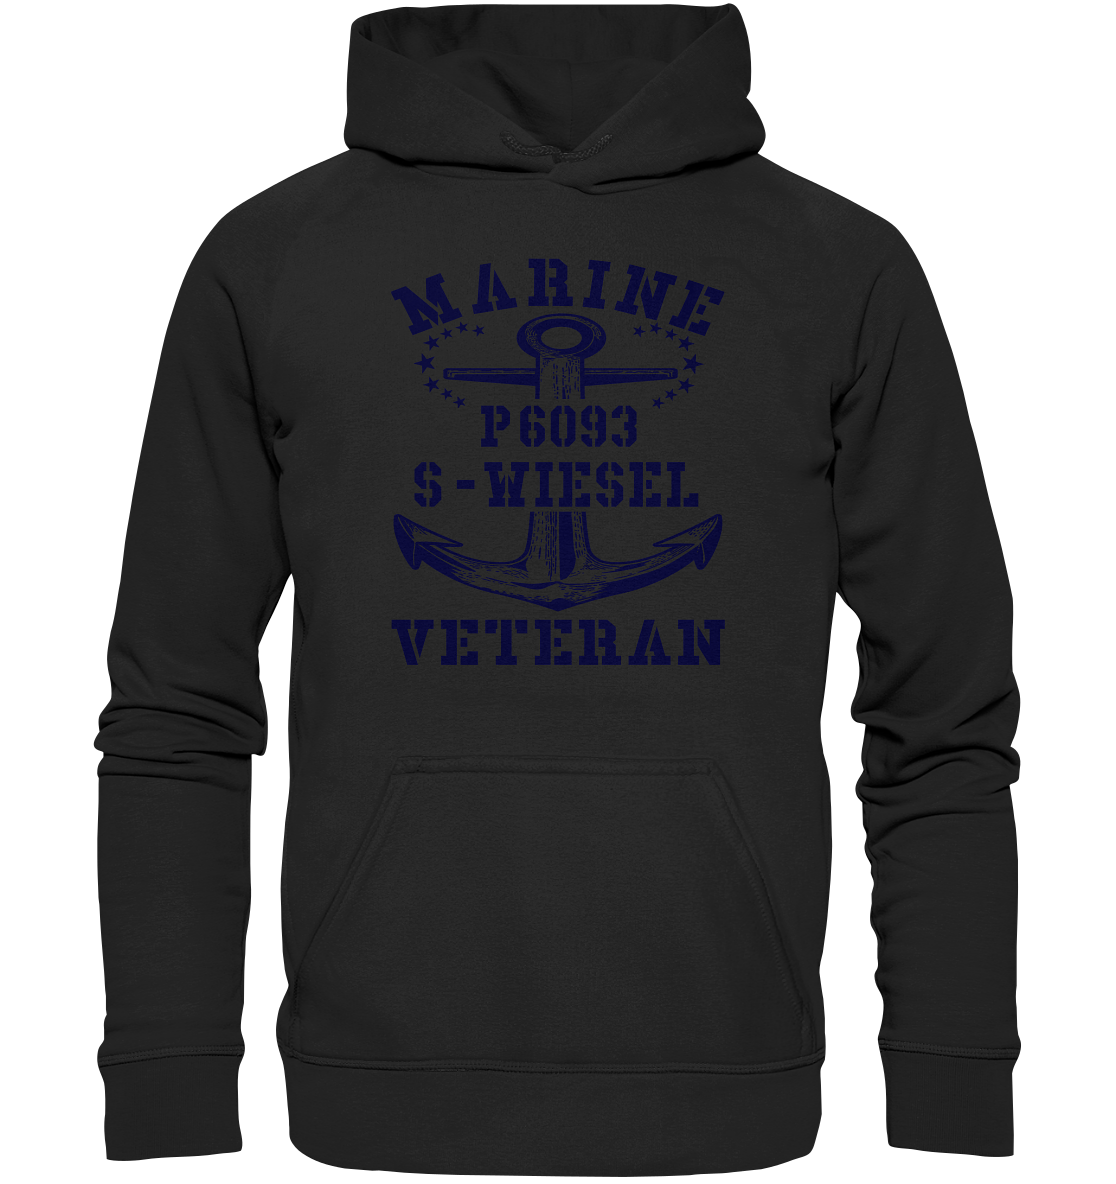 P6093 S-WIESEL Marine Veteran - Basic Unisex Hoodie